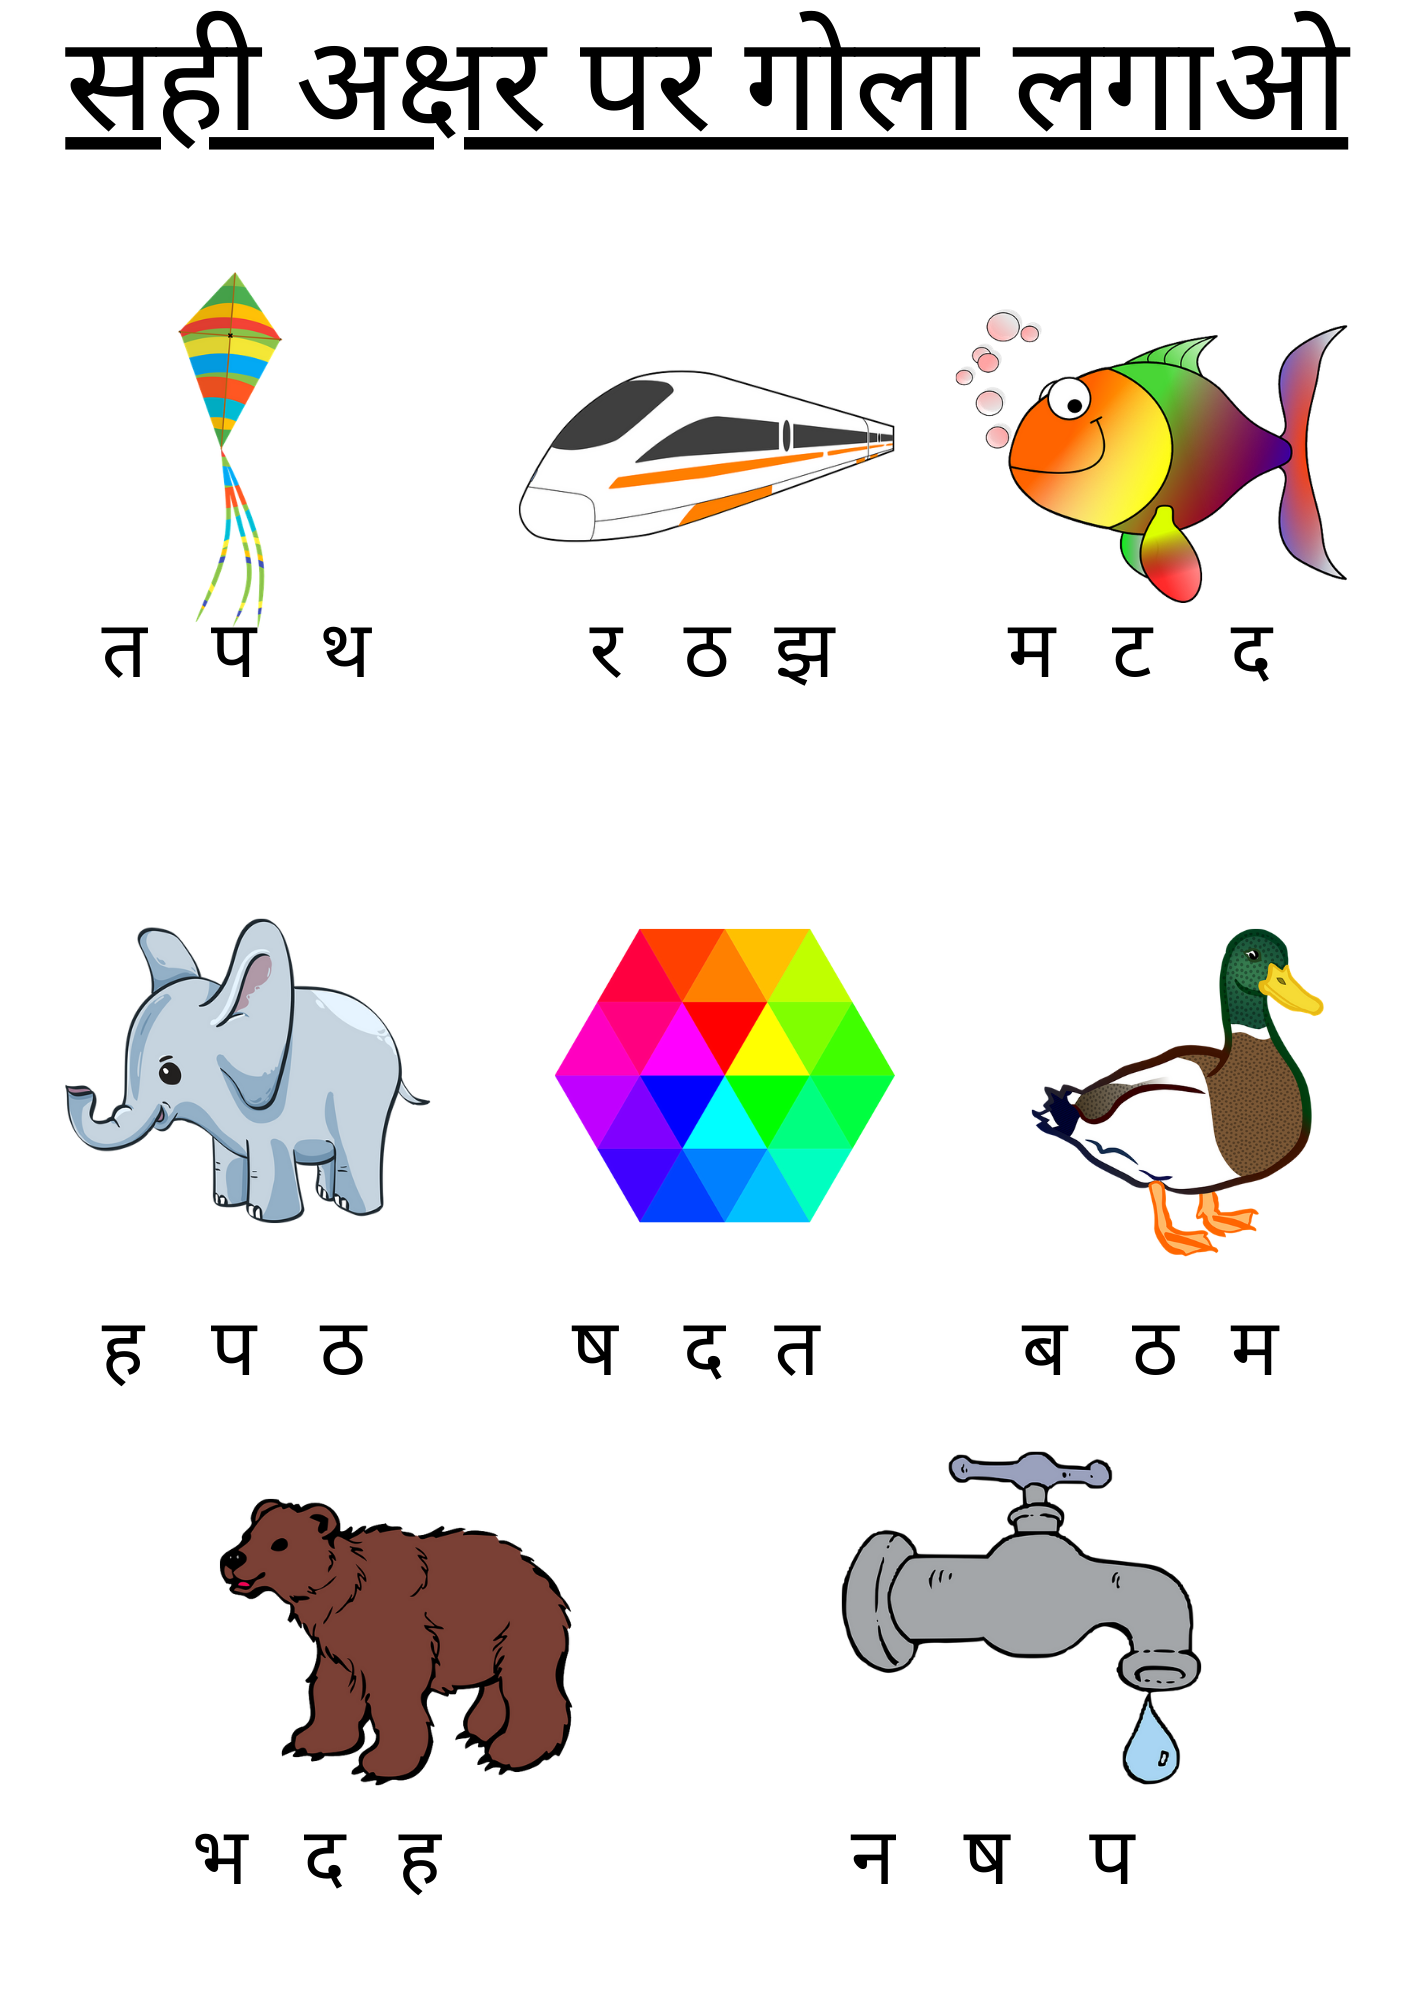 सही अक्षर पर गोला लगाओ | Hindi Worksheet